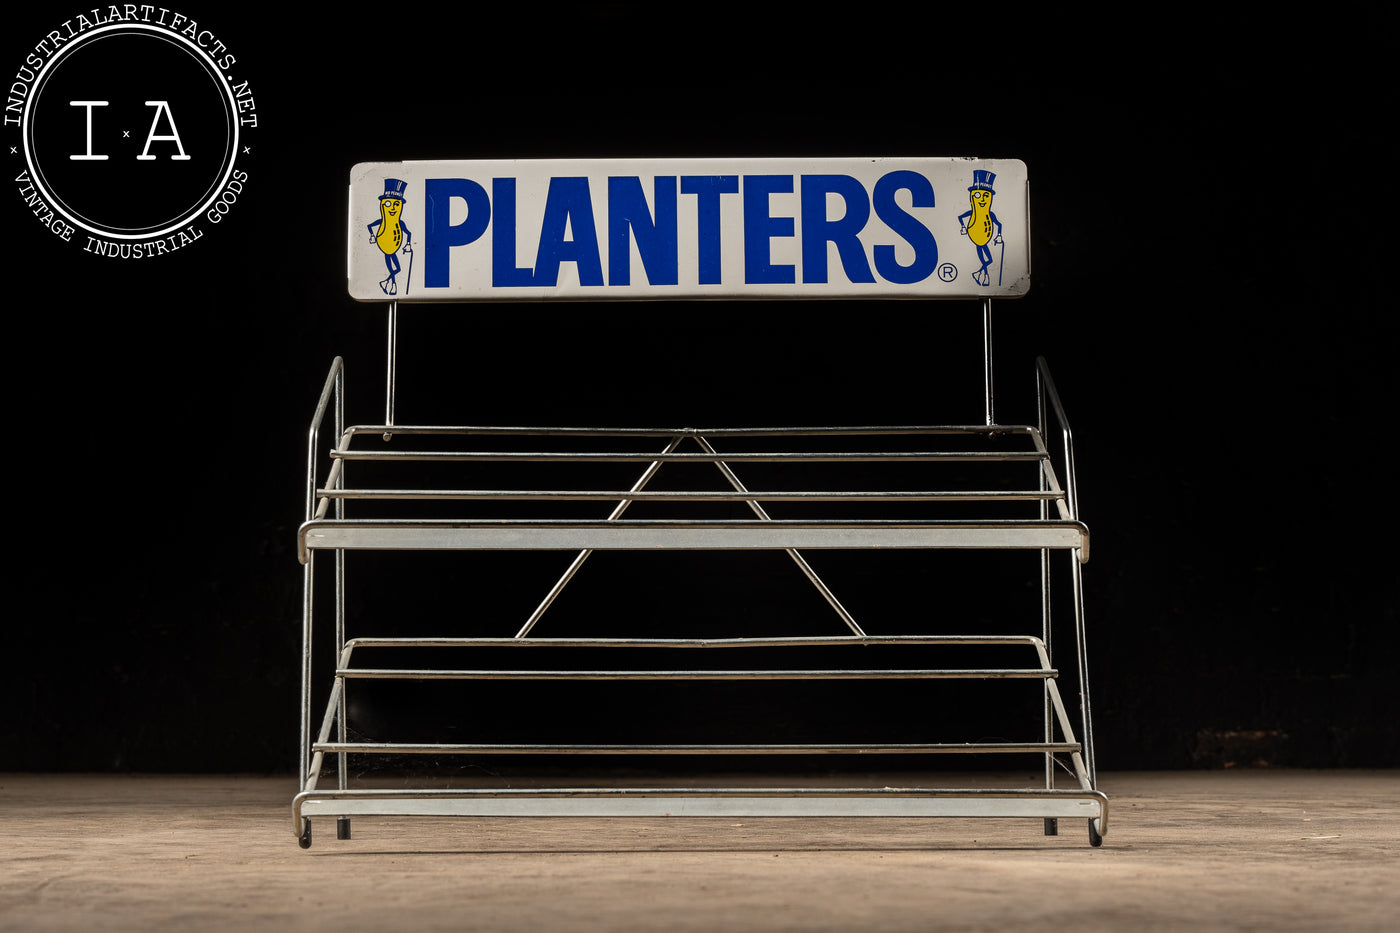 Vintage Planters Peanuts Display Rack